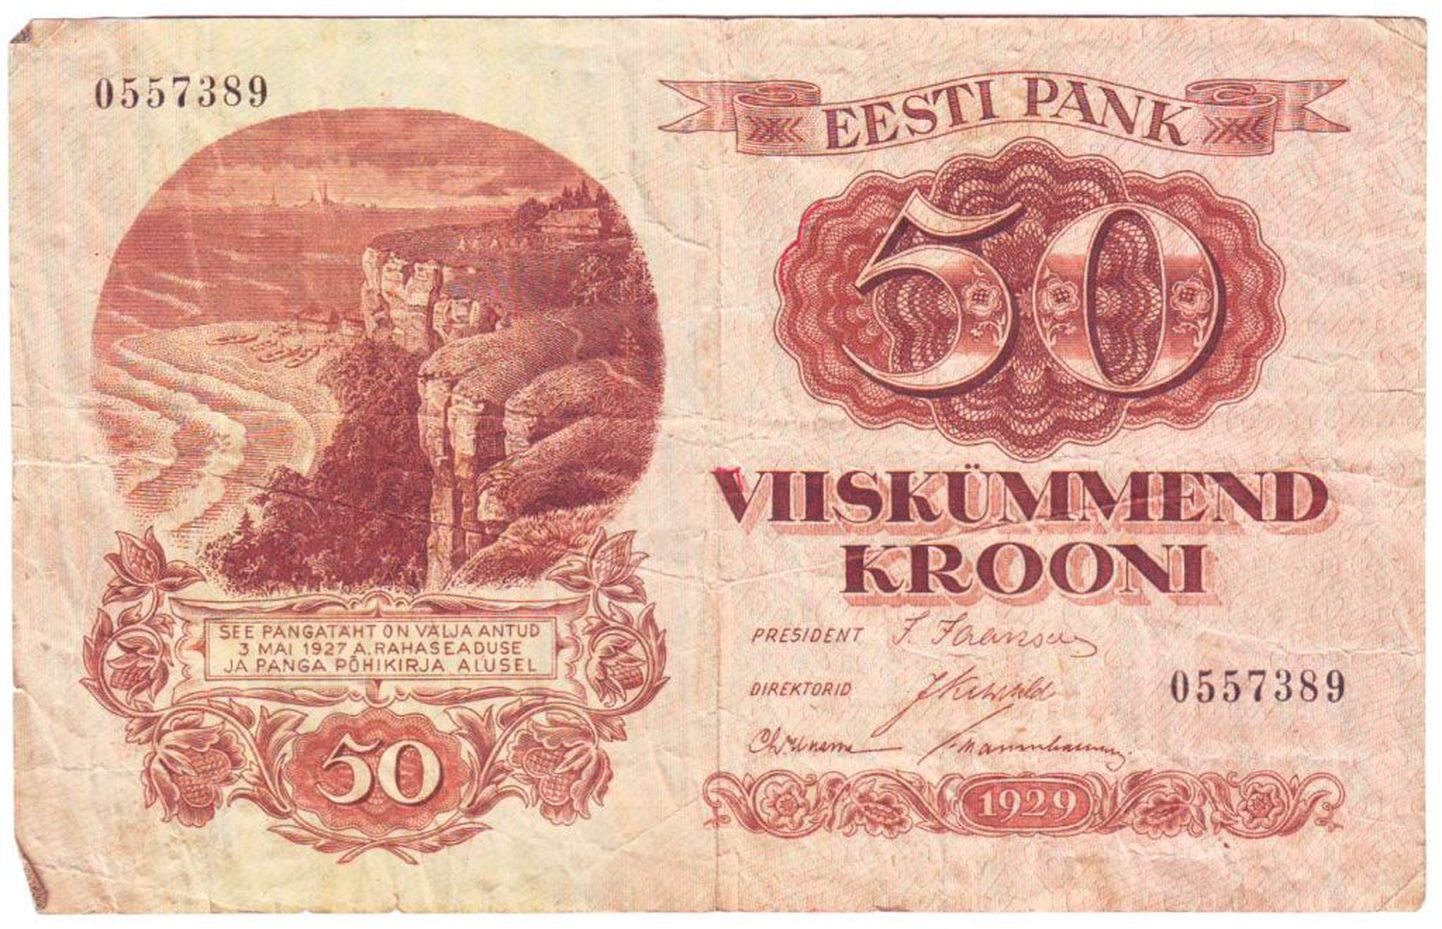 Ühe Eesti krooni ostujõud vastas tegelikult 8-10 rubla ostujõule NSV Liidus. Teistel andmetel oli krooni väärtus koguni 10-15 rubla. Rubla kehtestamisega sai eestlane krooni eest vastu vaid 1/8 - 1/6 oma raha tõelisest väärtusest.